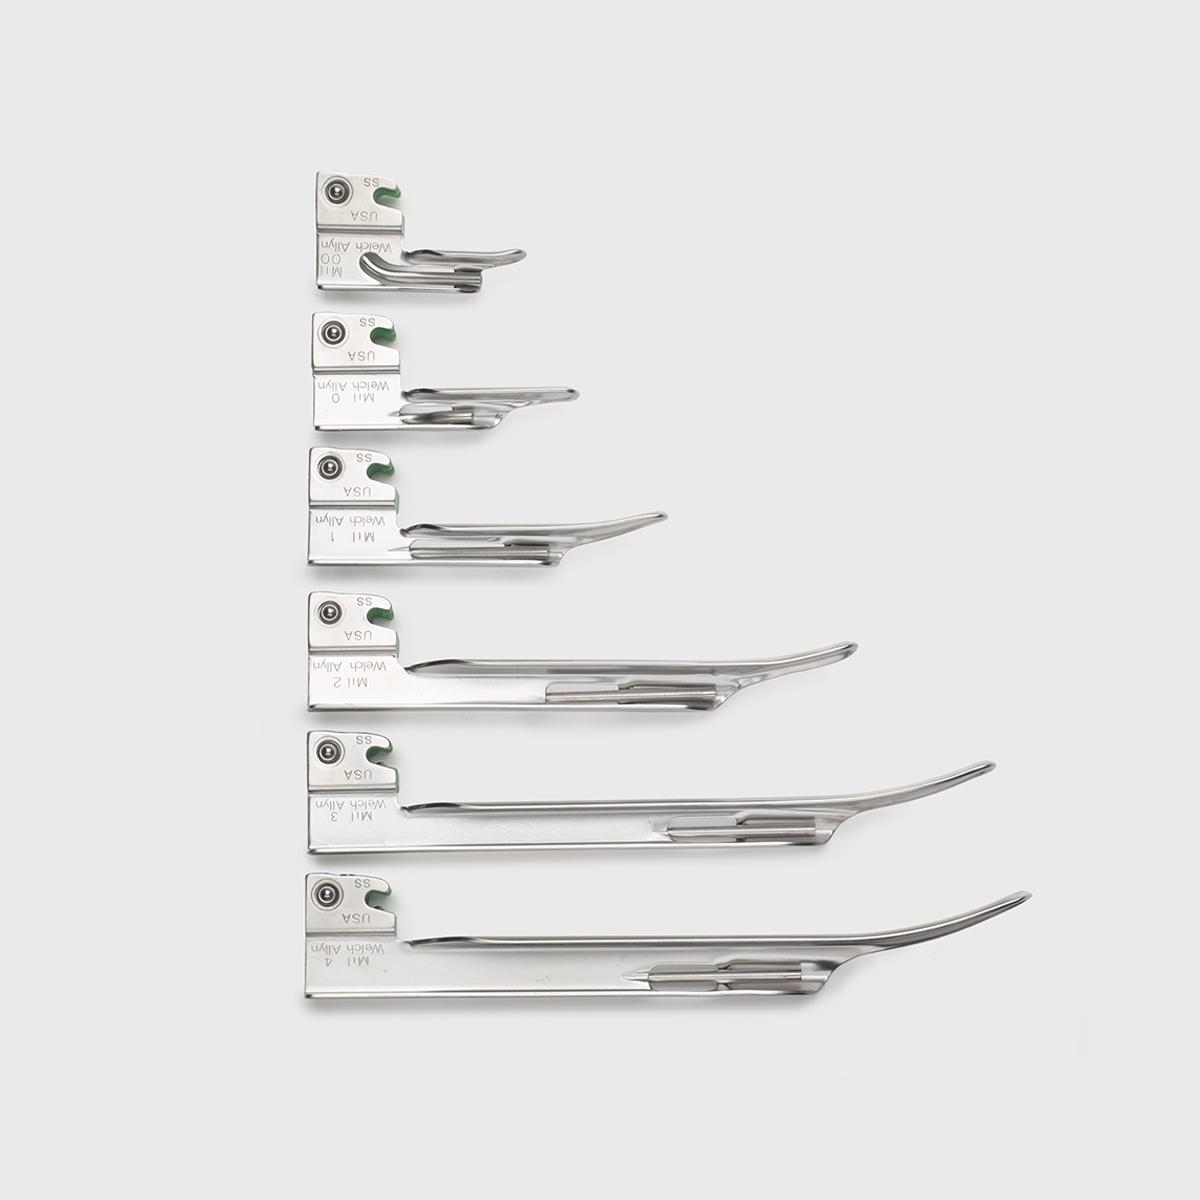 Seis lâminas Miller do sistema de laringoscópio de fibra óptica Welch Allyn de vários tamanhos.